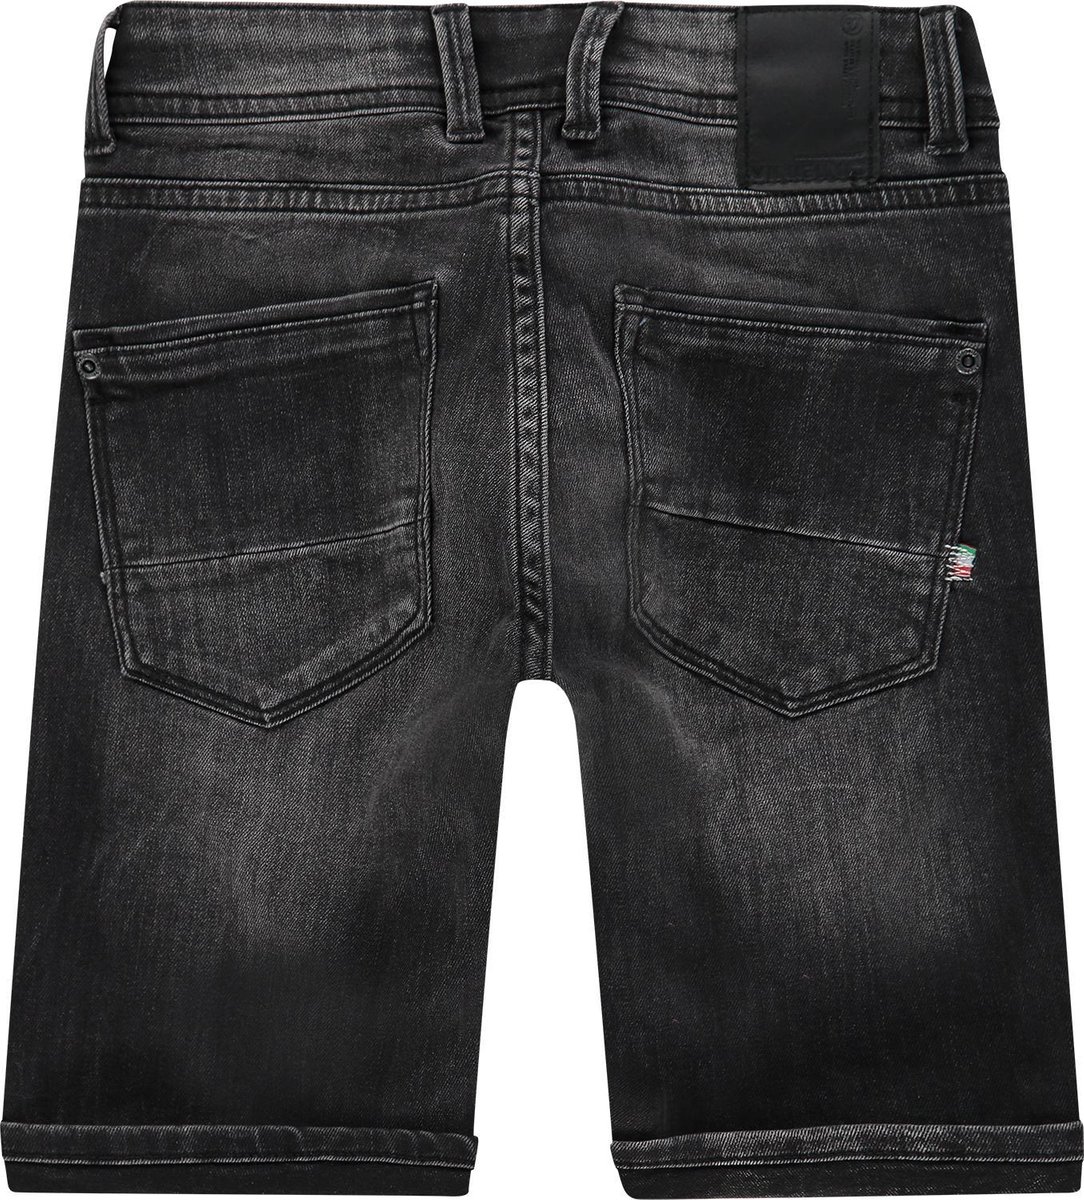 Beg Merg Statistisch Vingino Essentials Kinder Jongens Jeans short - Maat 98 | DGM Outlet